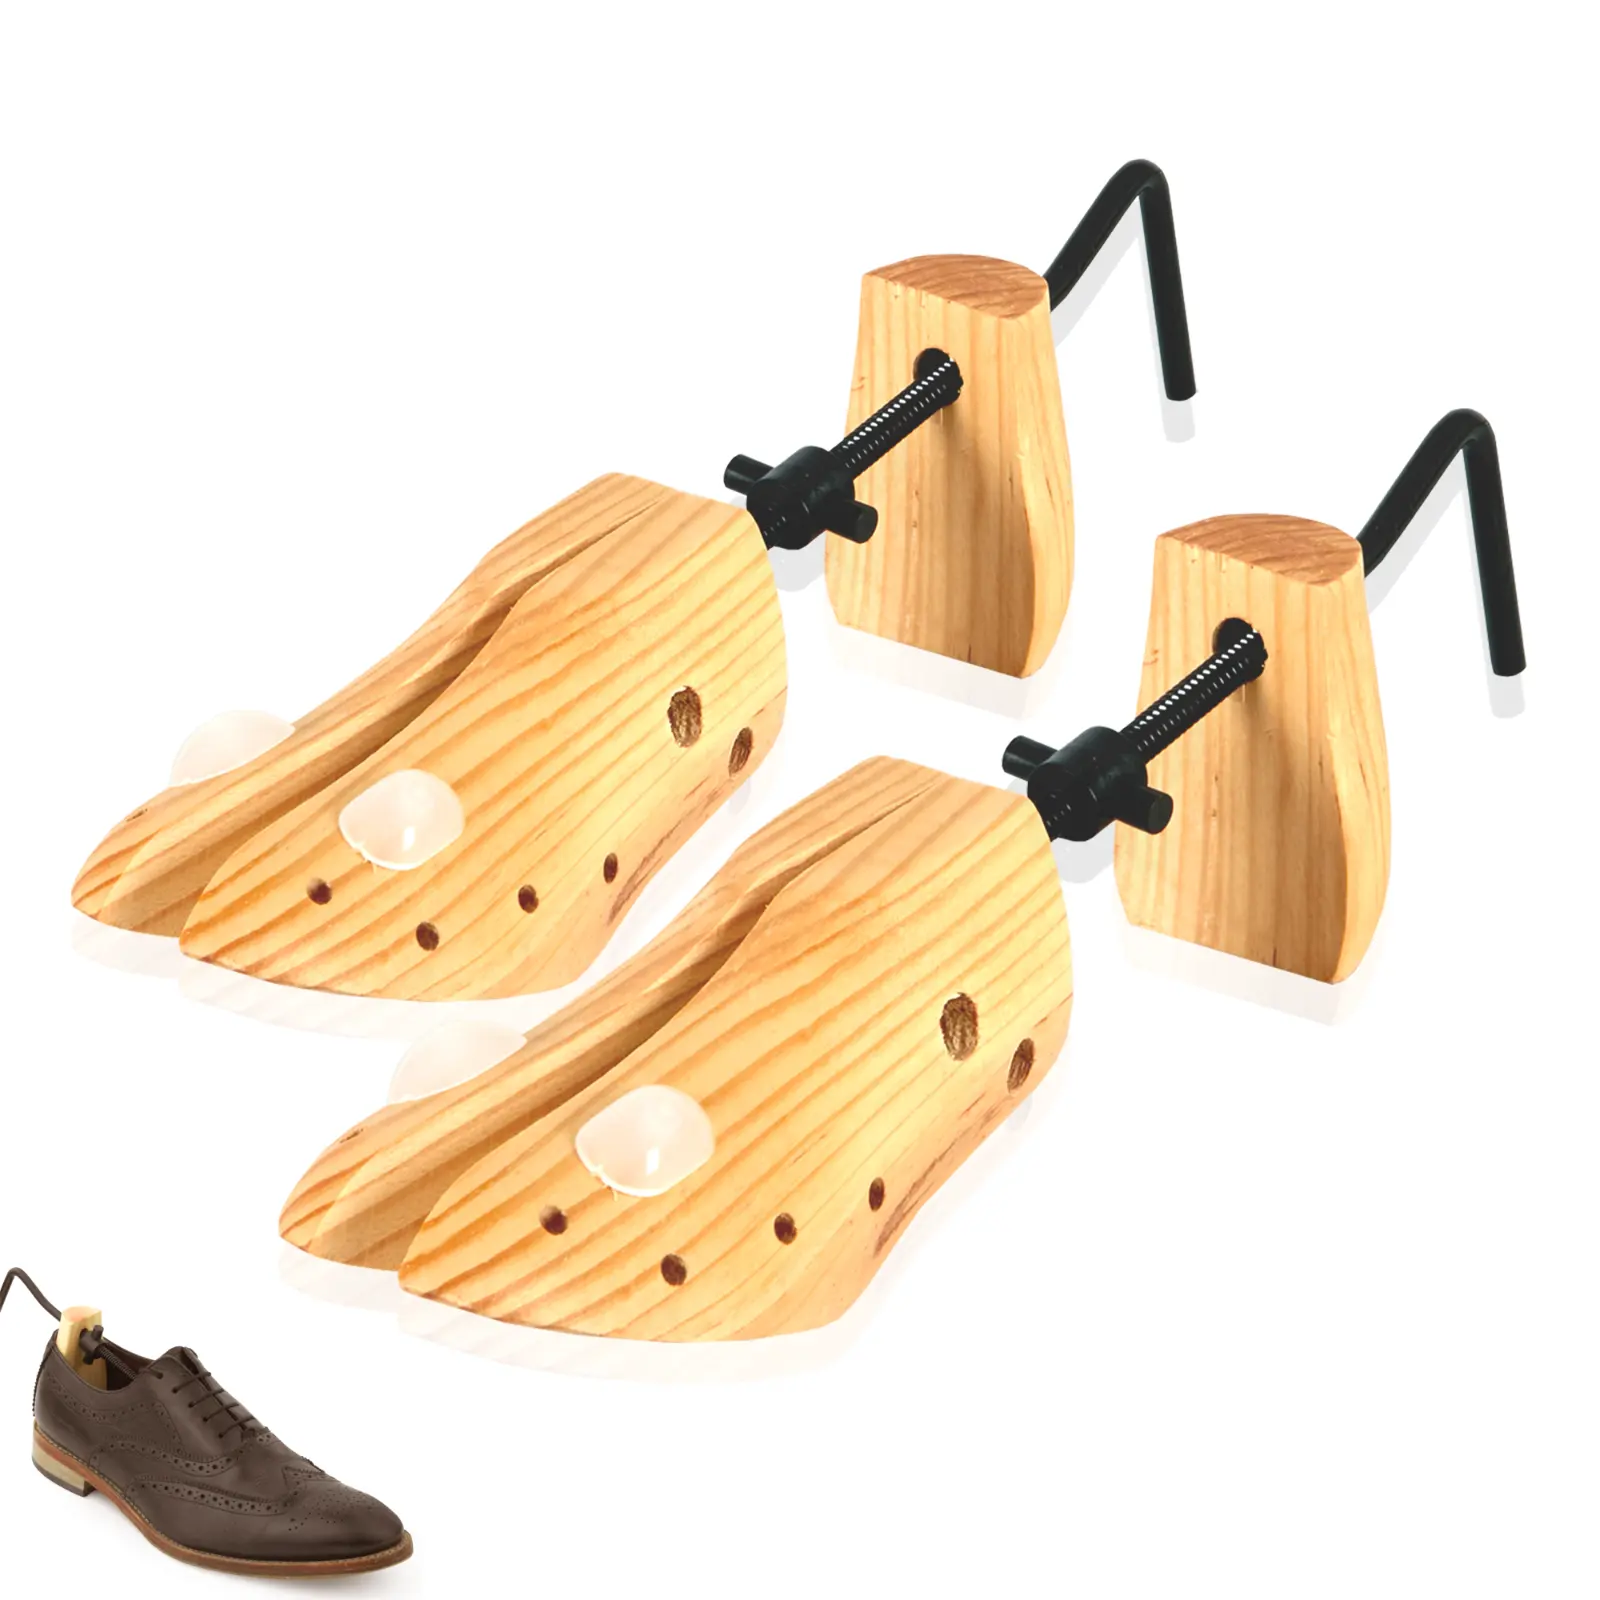 Commercio all'ingrosso della fabbrica di legno della barella della scarpa Anti piega wideer Stretching per le donne degli uomini